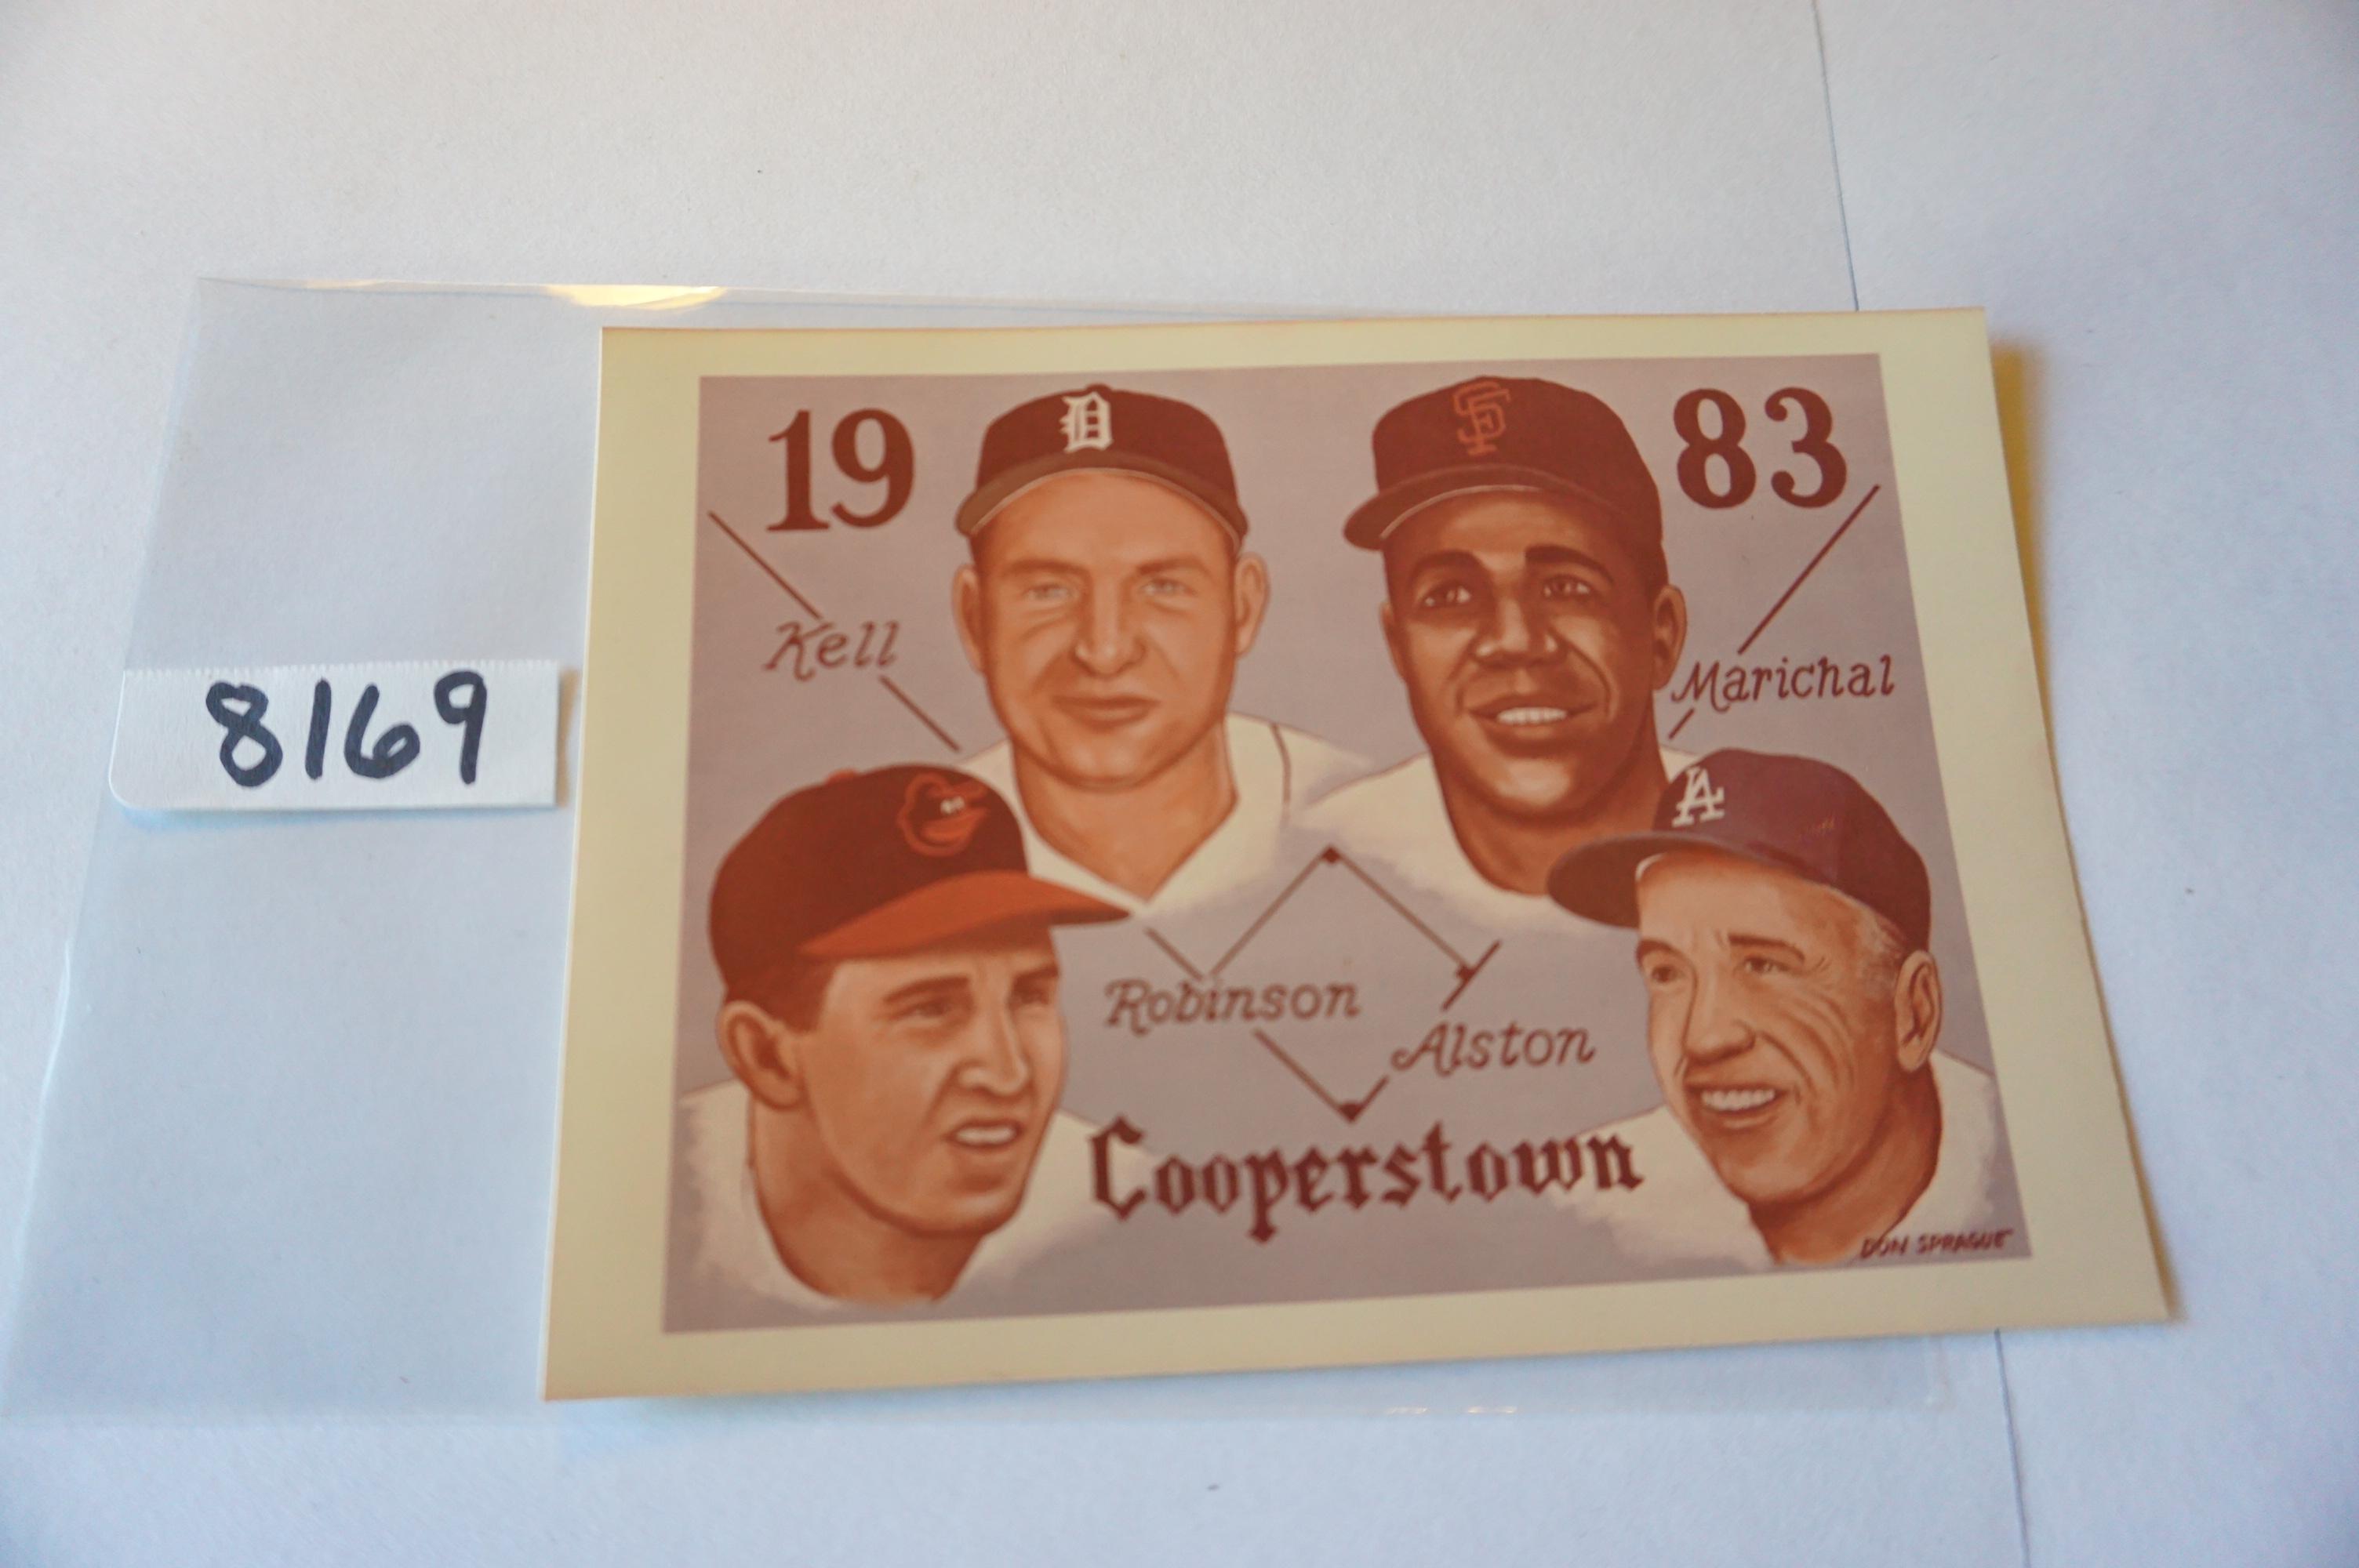 SCARCE: 3.5"x5" Cooperstown, HOF, Publicity Card on Vintage KODAK Paper! Super Estate Find!